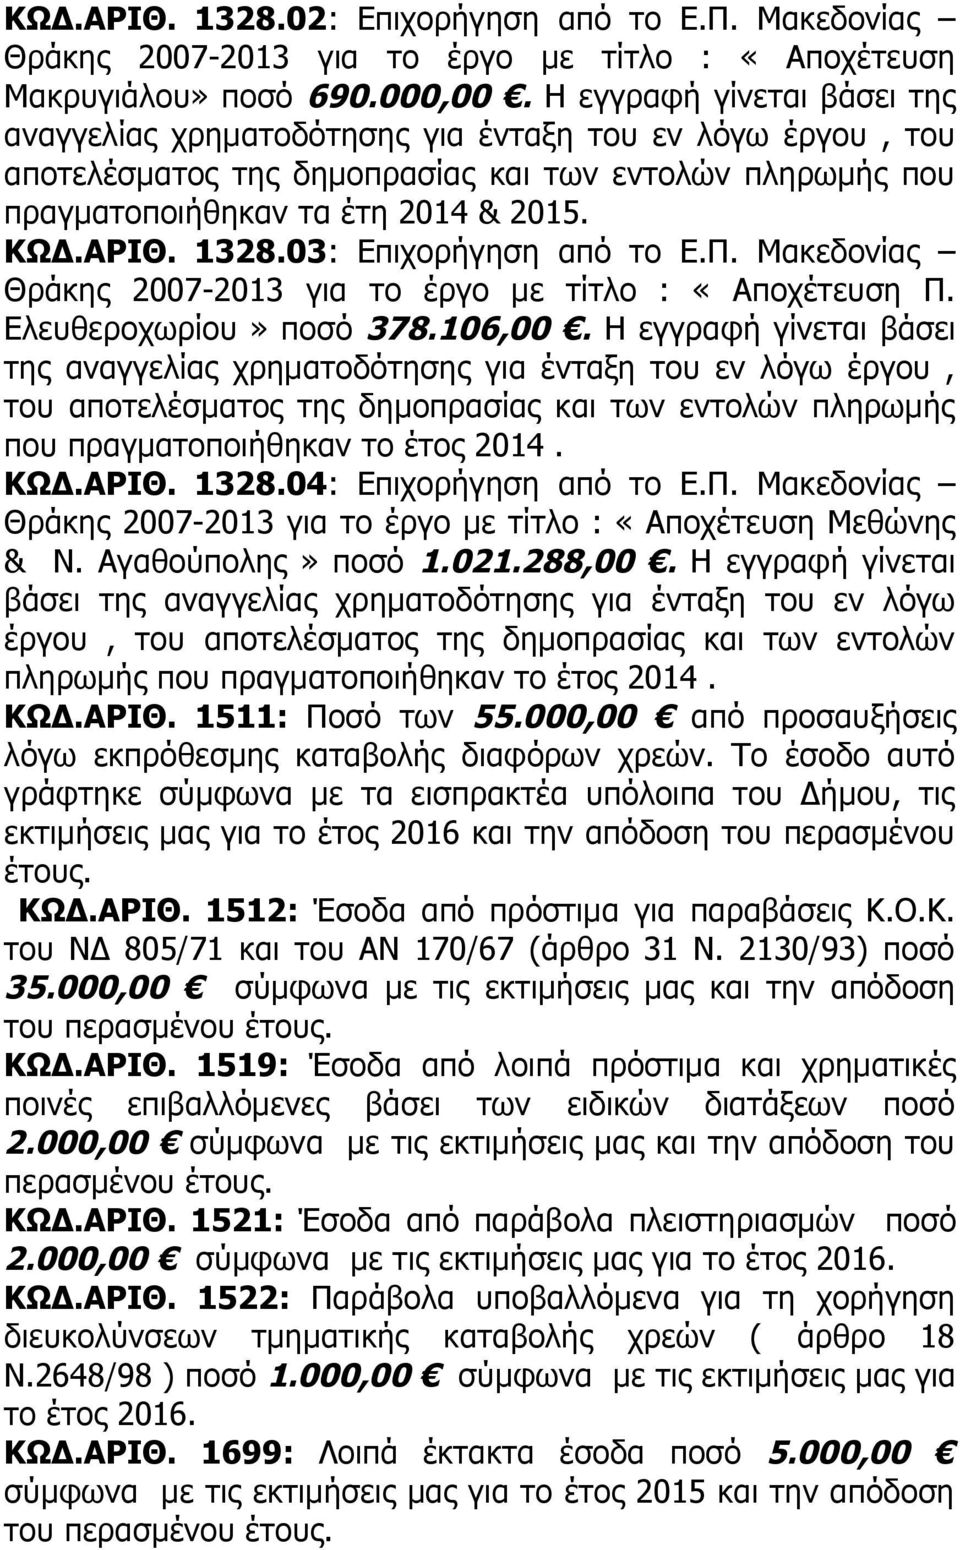 03: Επιχορήγηση από το Ε.Π. Μακεδονίας Θράκης 2007-2013 για το έργο με τίτλο : «Αποχέτευση Π. Ελευθεροχωρίου» ποσό 378.106,00.